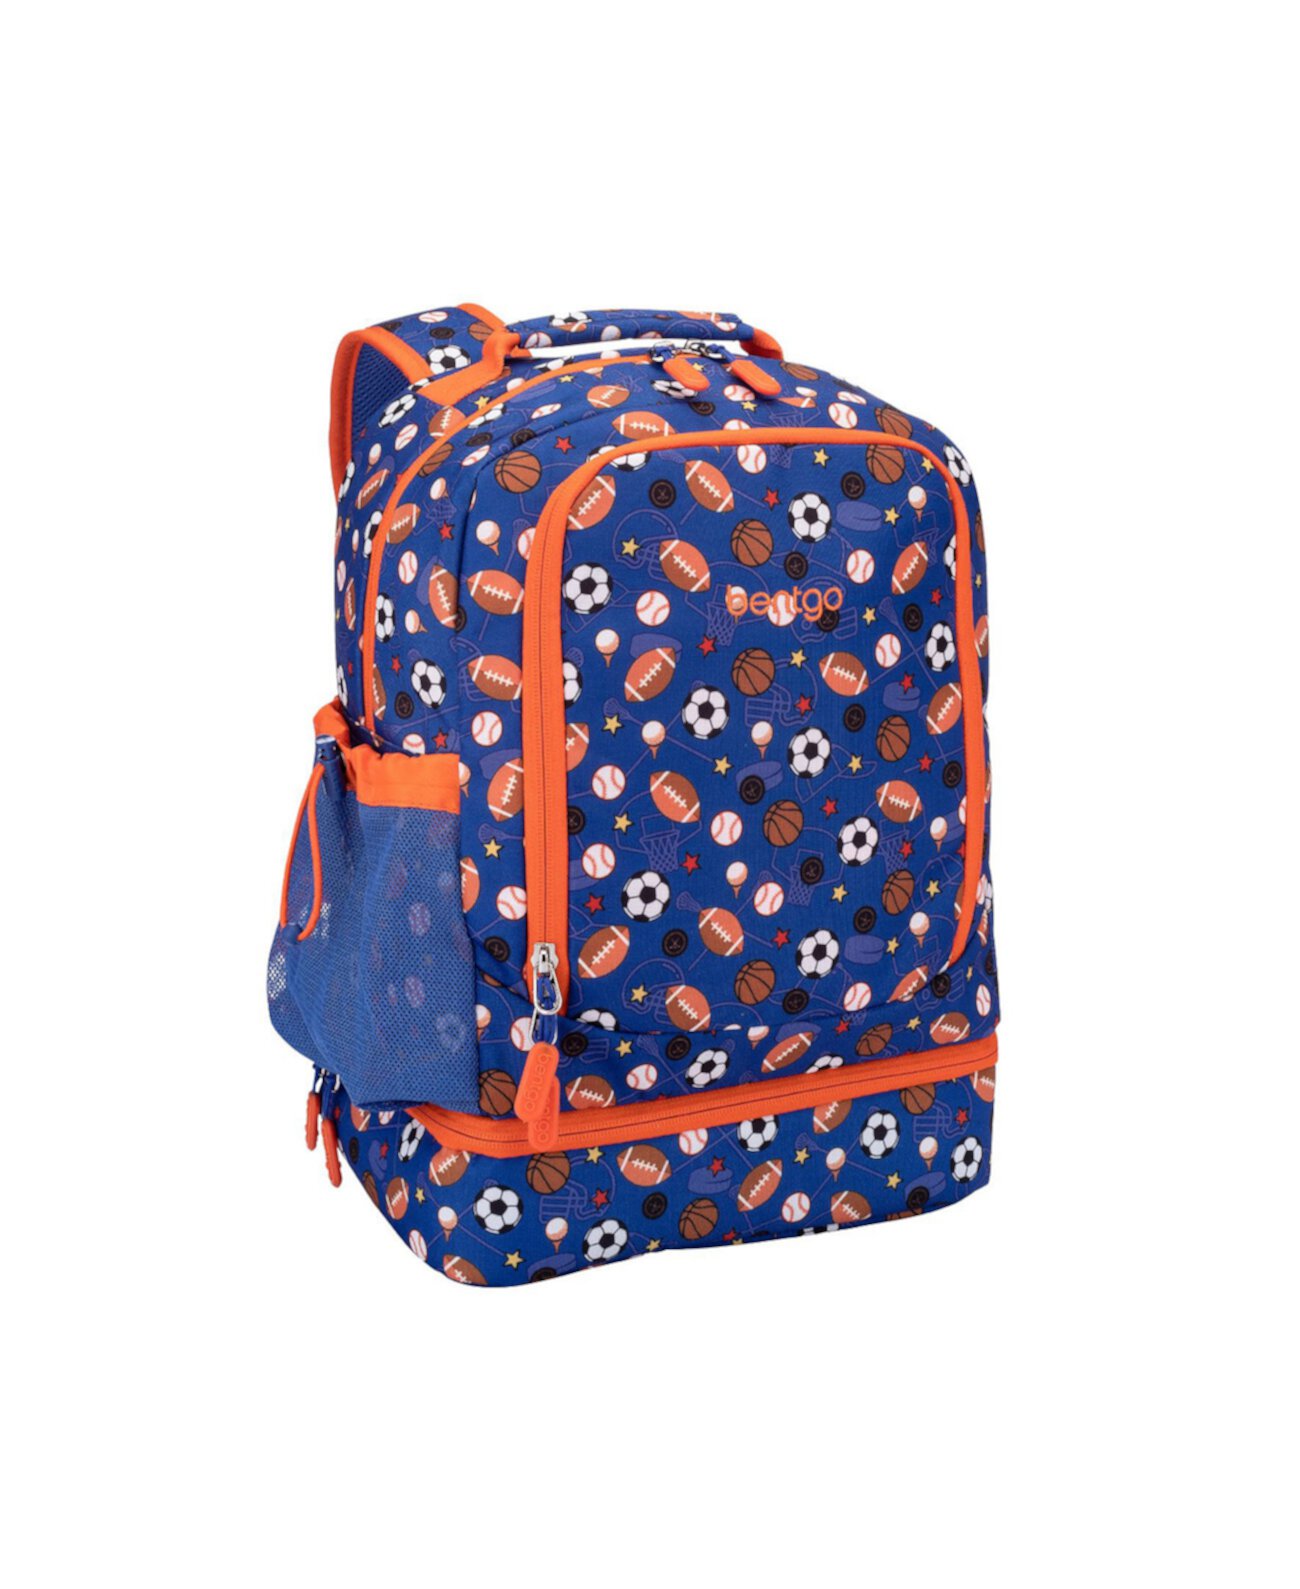 Рюкзак 2-в-1 с детскими принтами и изолированная сумка для обеда - Спорт Bentgo